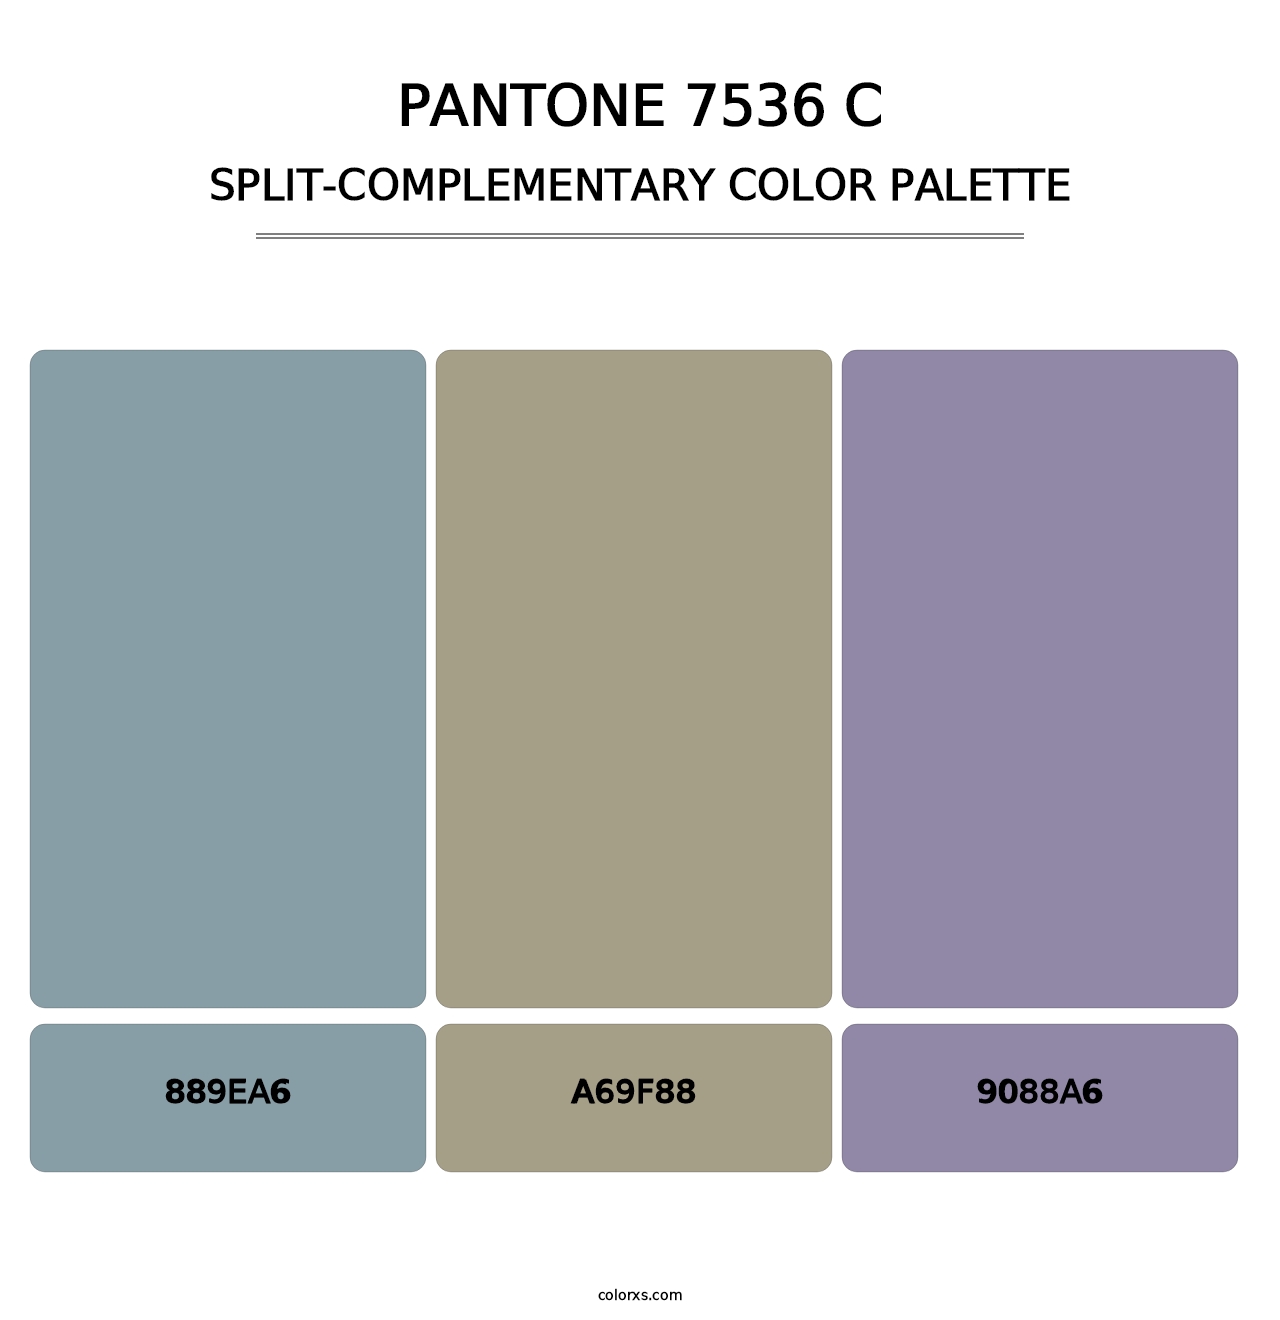 PANTONE 7536 C - Split-Complementary Color Palette